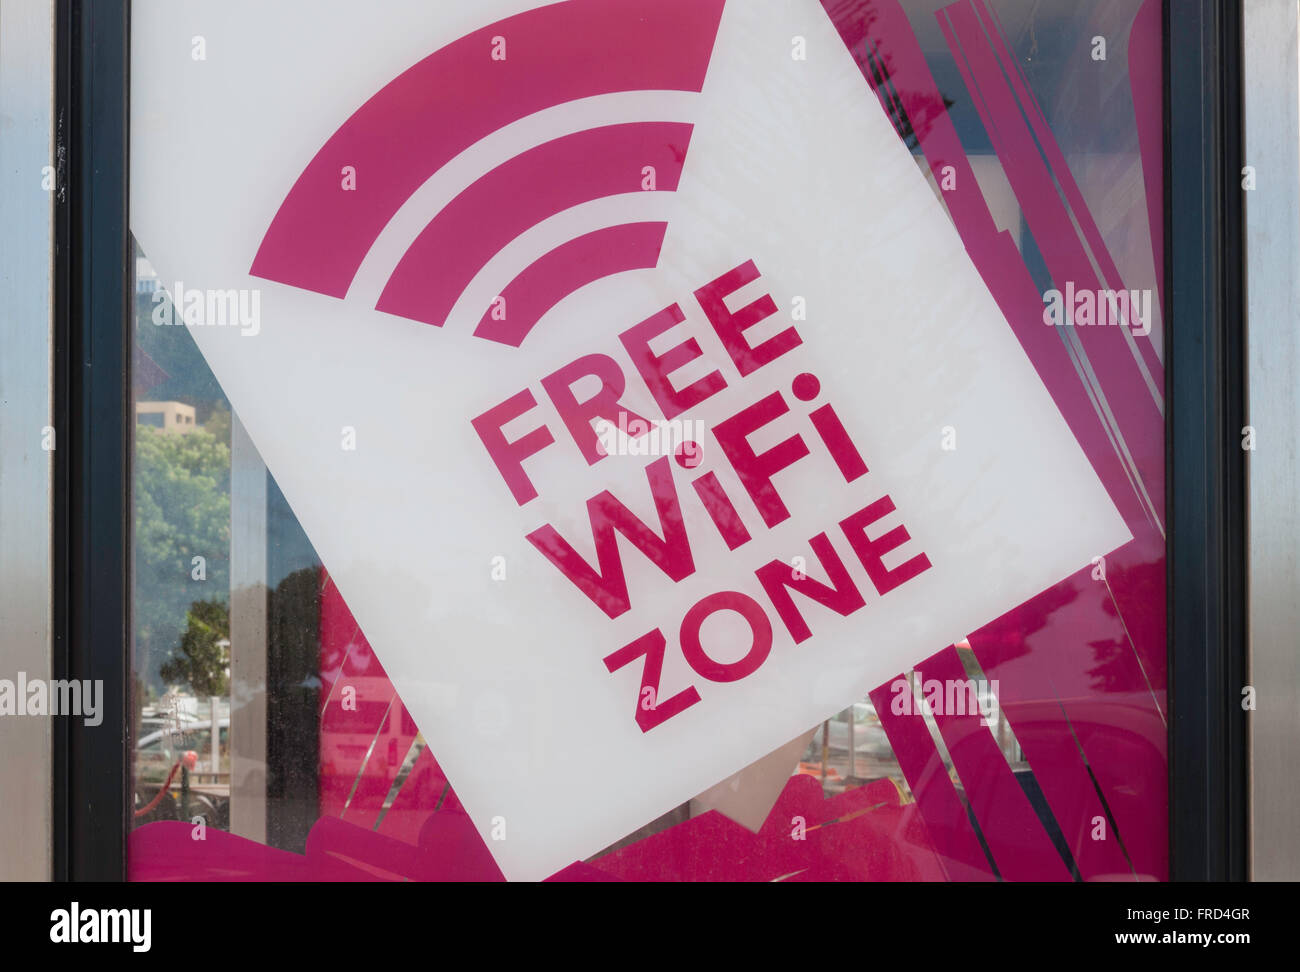 Free WiFi Zone signe sur cabine téléphonique, Esplanade, Sumner, Christchurch, Canterbury, île du Sud, Nouvelle-Zélande Banque D'Images